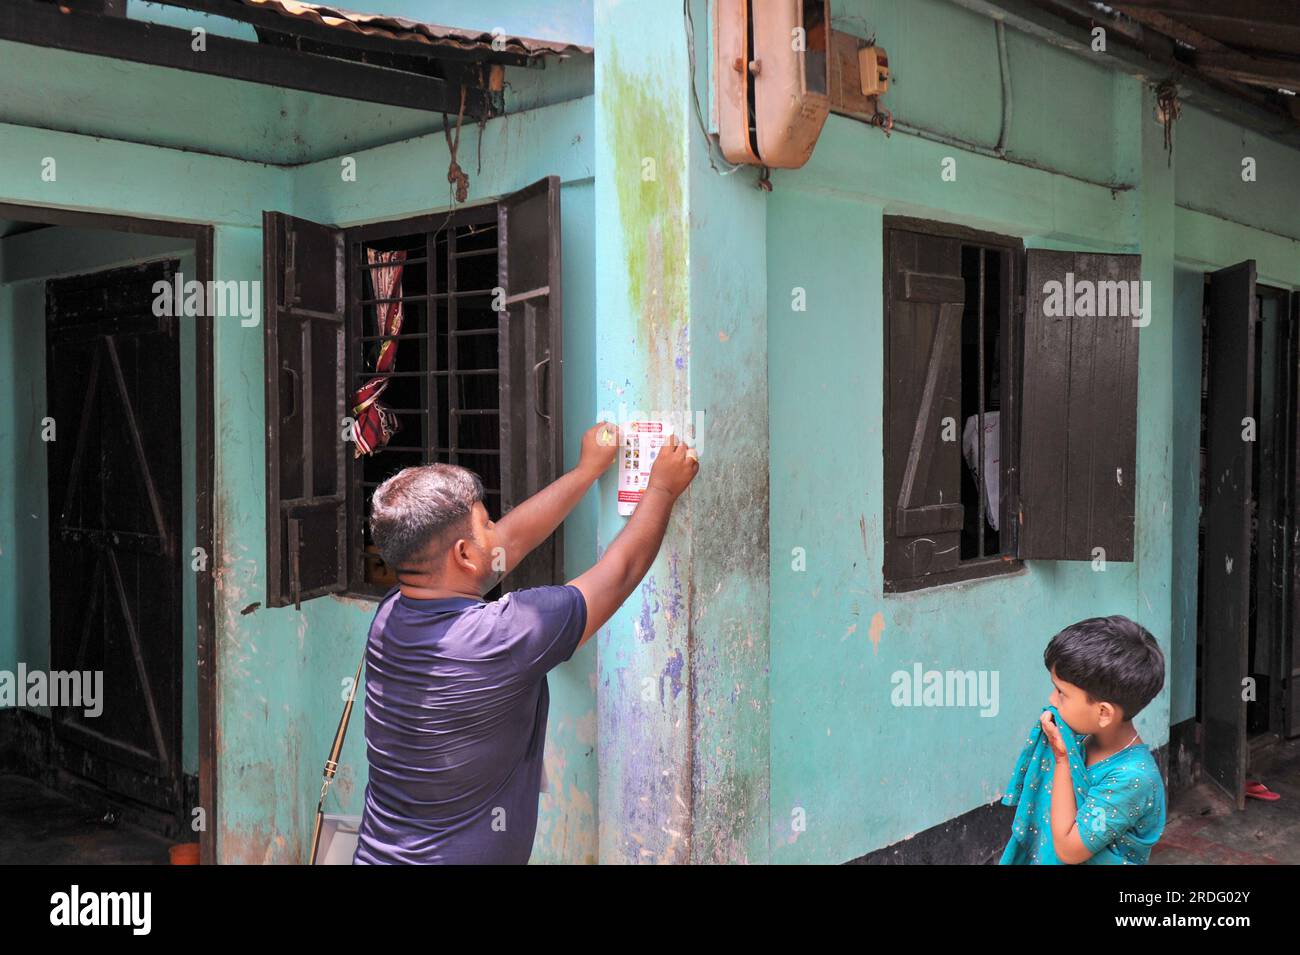 Sylhet City Corporation personale del Dipartimento della salute incollare adesivi sul muro della casa. Da giugno Sylhet City Corporation e Save the Children stanno conducendo programmi di sensibilizzazione pubblica per prevenire la diffusione della dengue in diversi quartieri della città di Sylhet. Sylhet, Bangladesh. Foto Stock